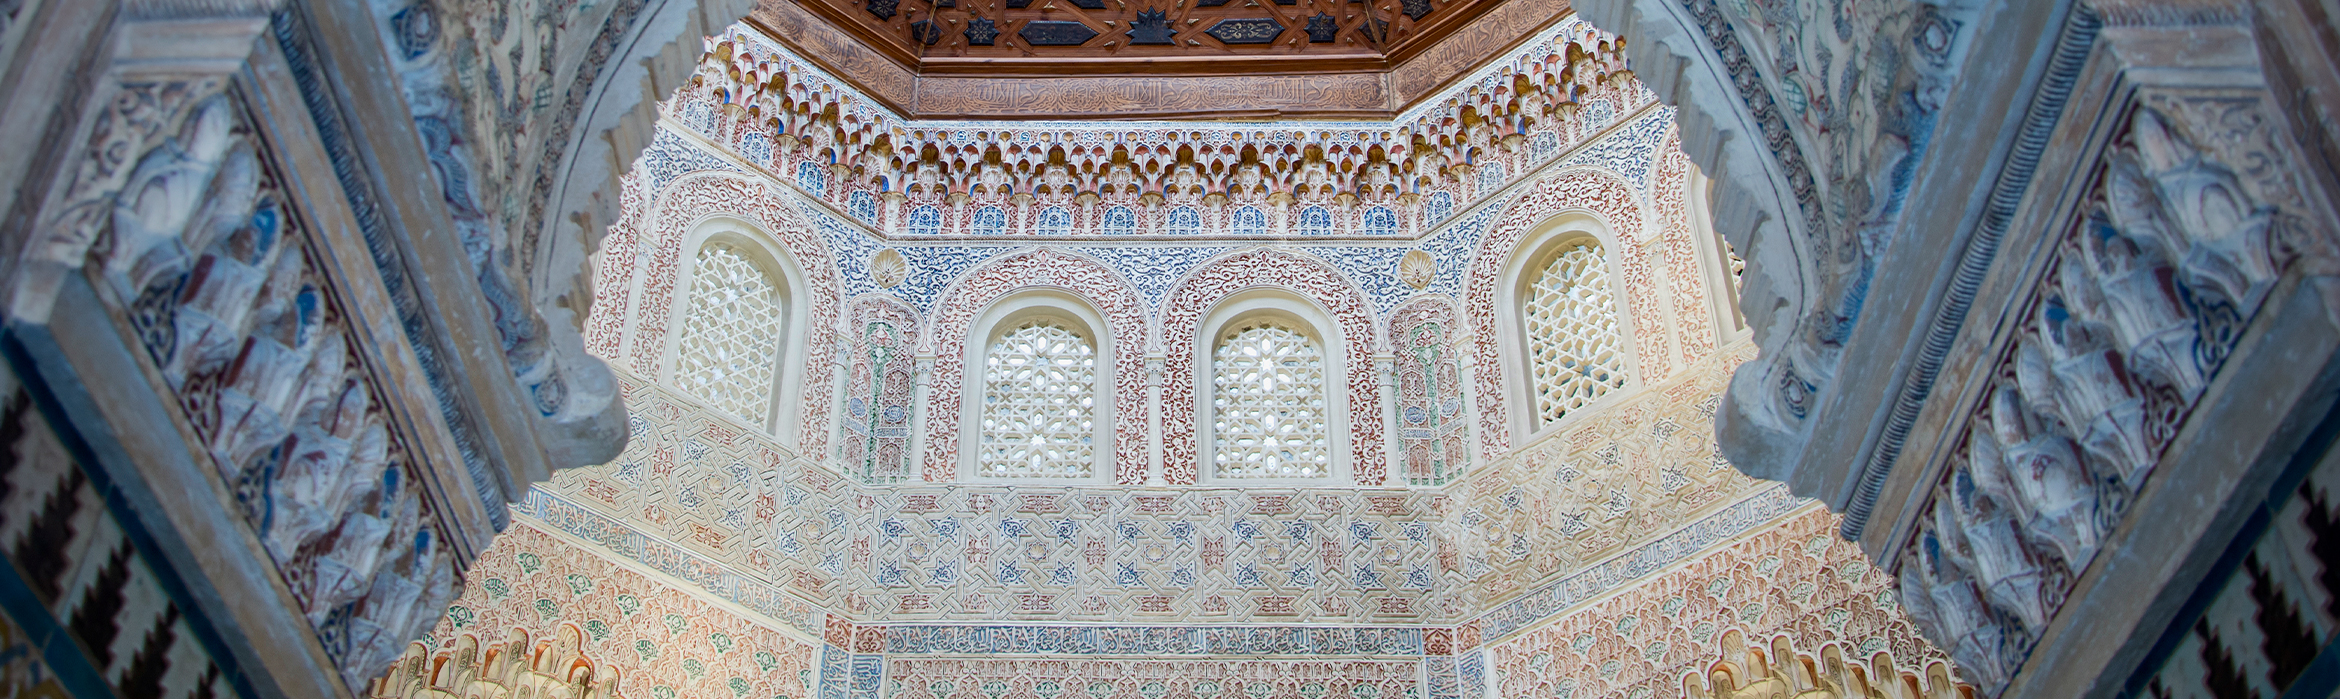 Sala con estilo mudéjar, imagen representativa del legado de Al-Ándalus